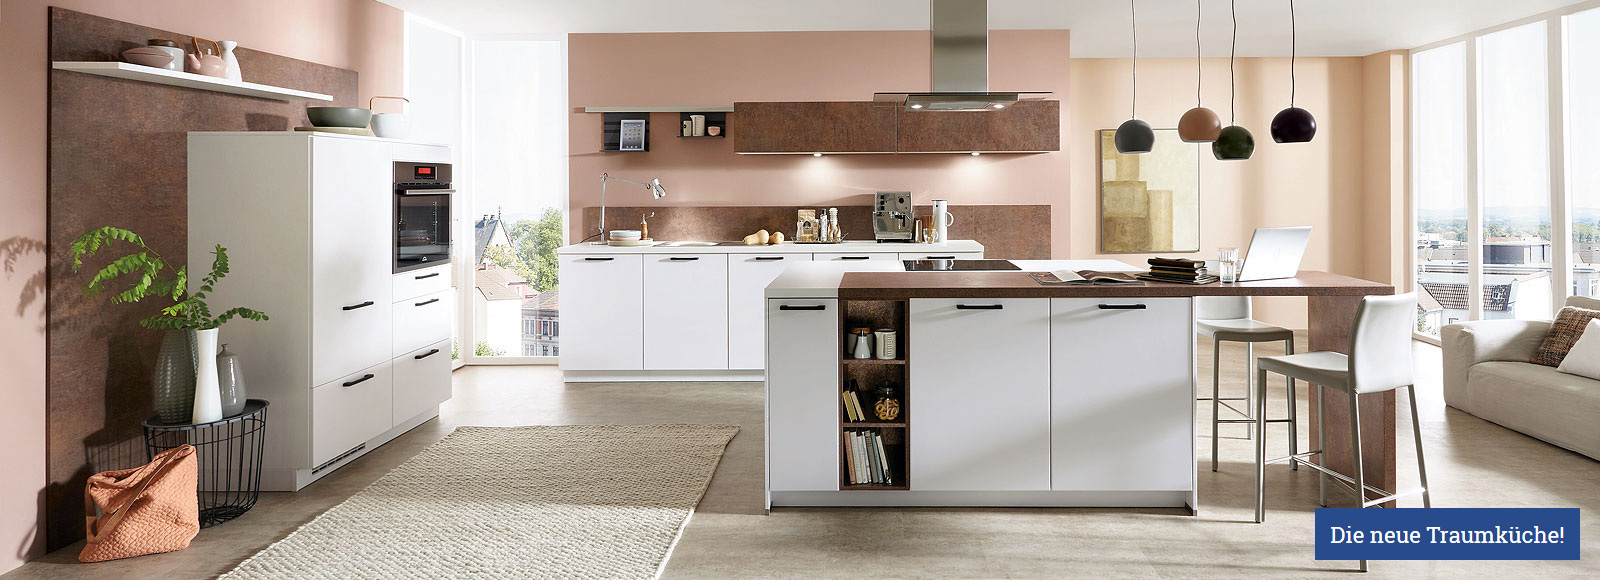 Die neue Traumküche - günstig kaufen bei Kranepuhl's Optimale Möbelmärkte